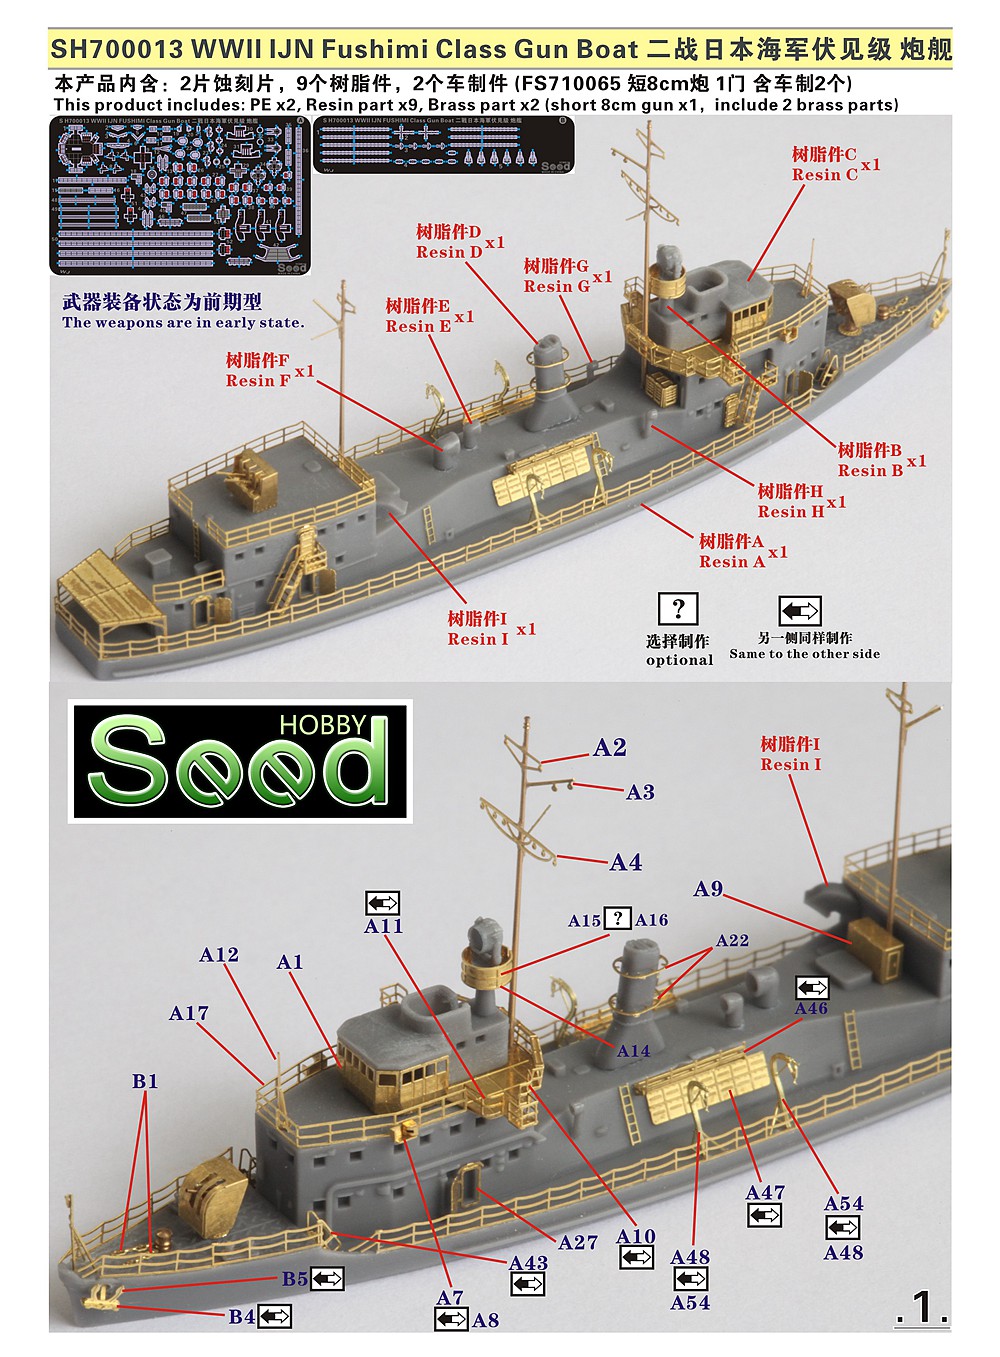 1/700 二战日本海军伏见级炮舰树脂模型套件